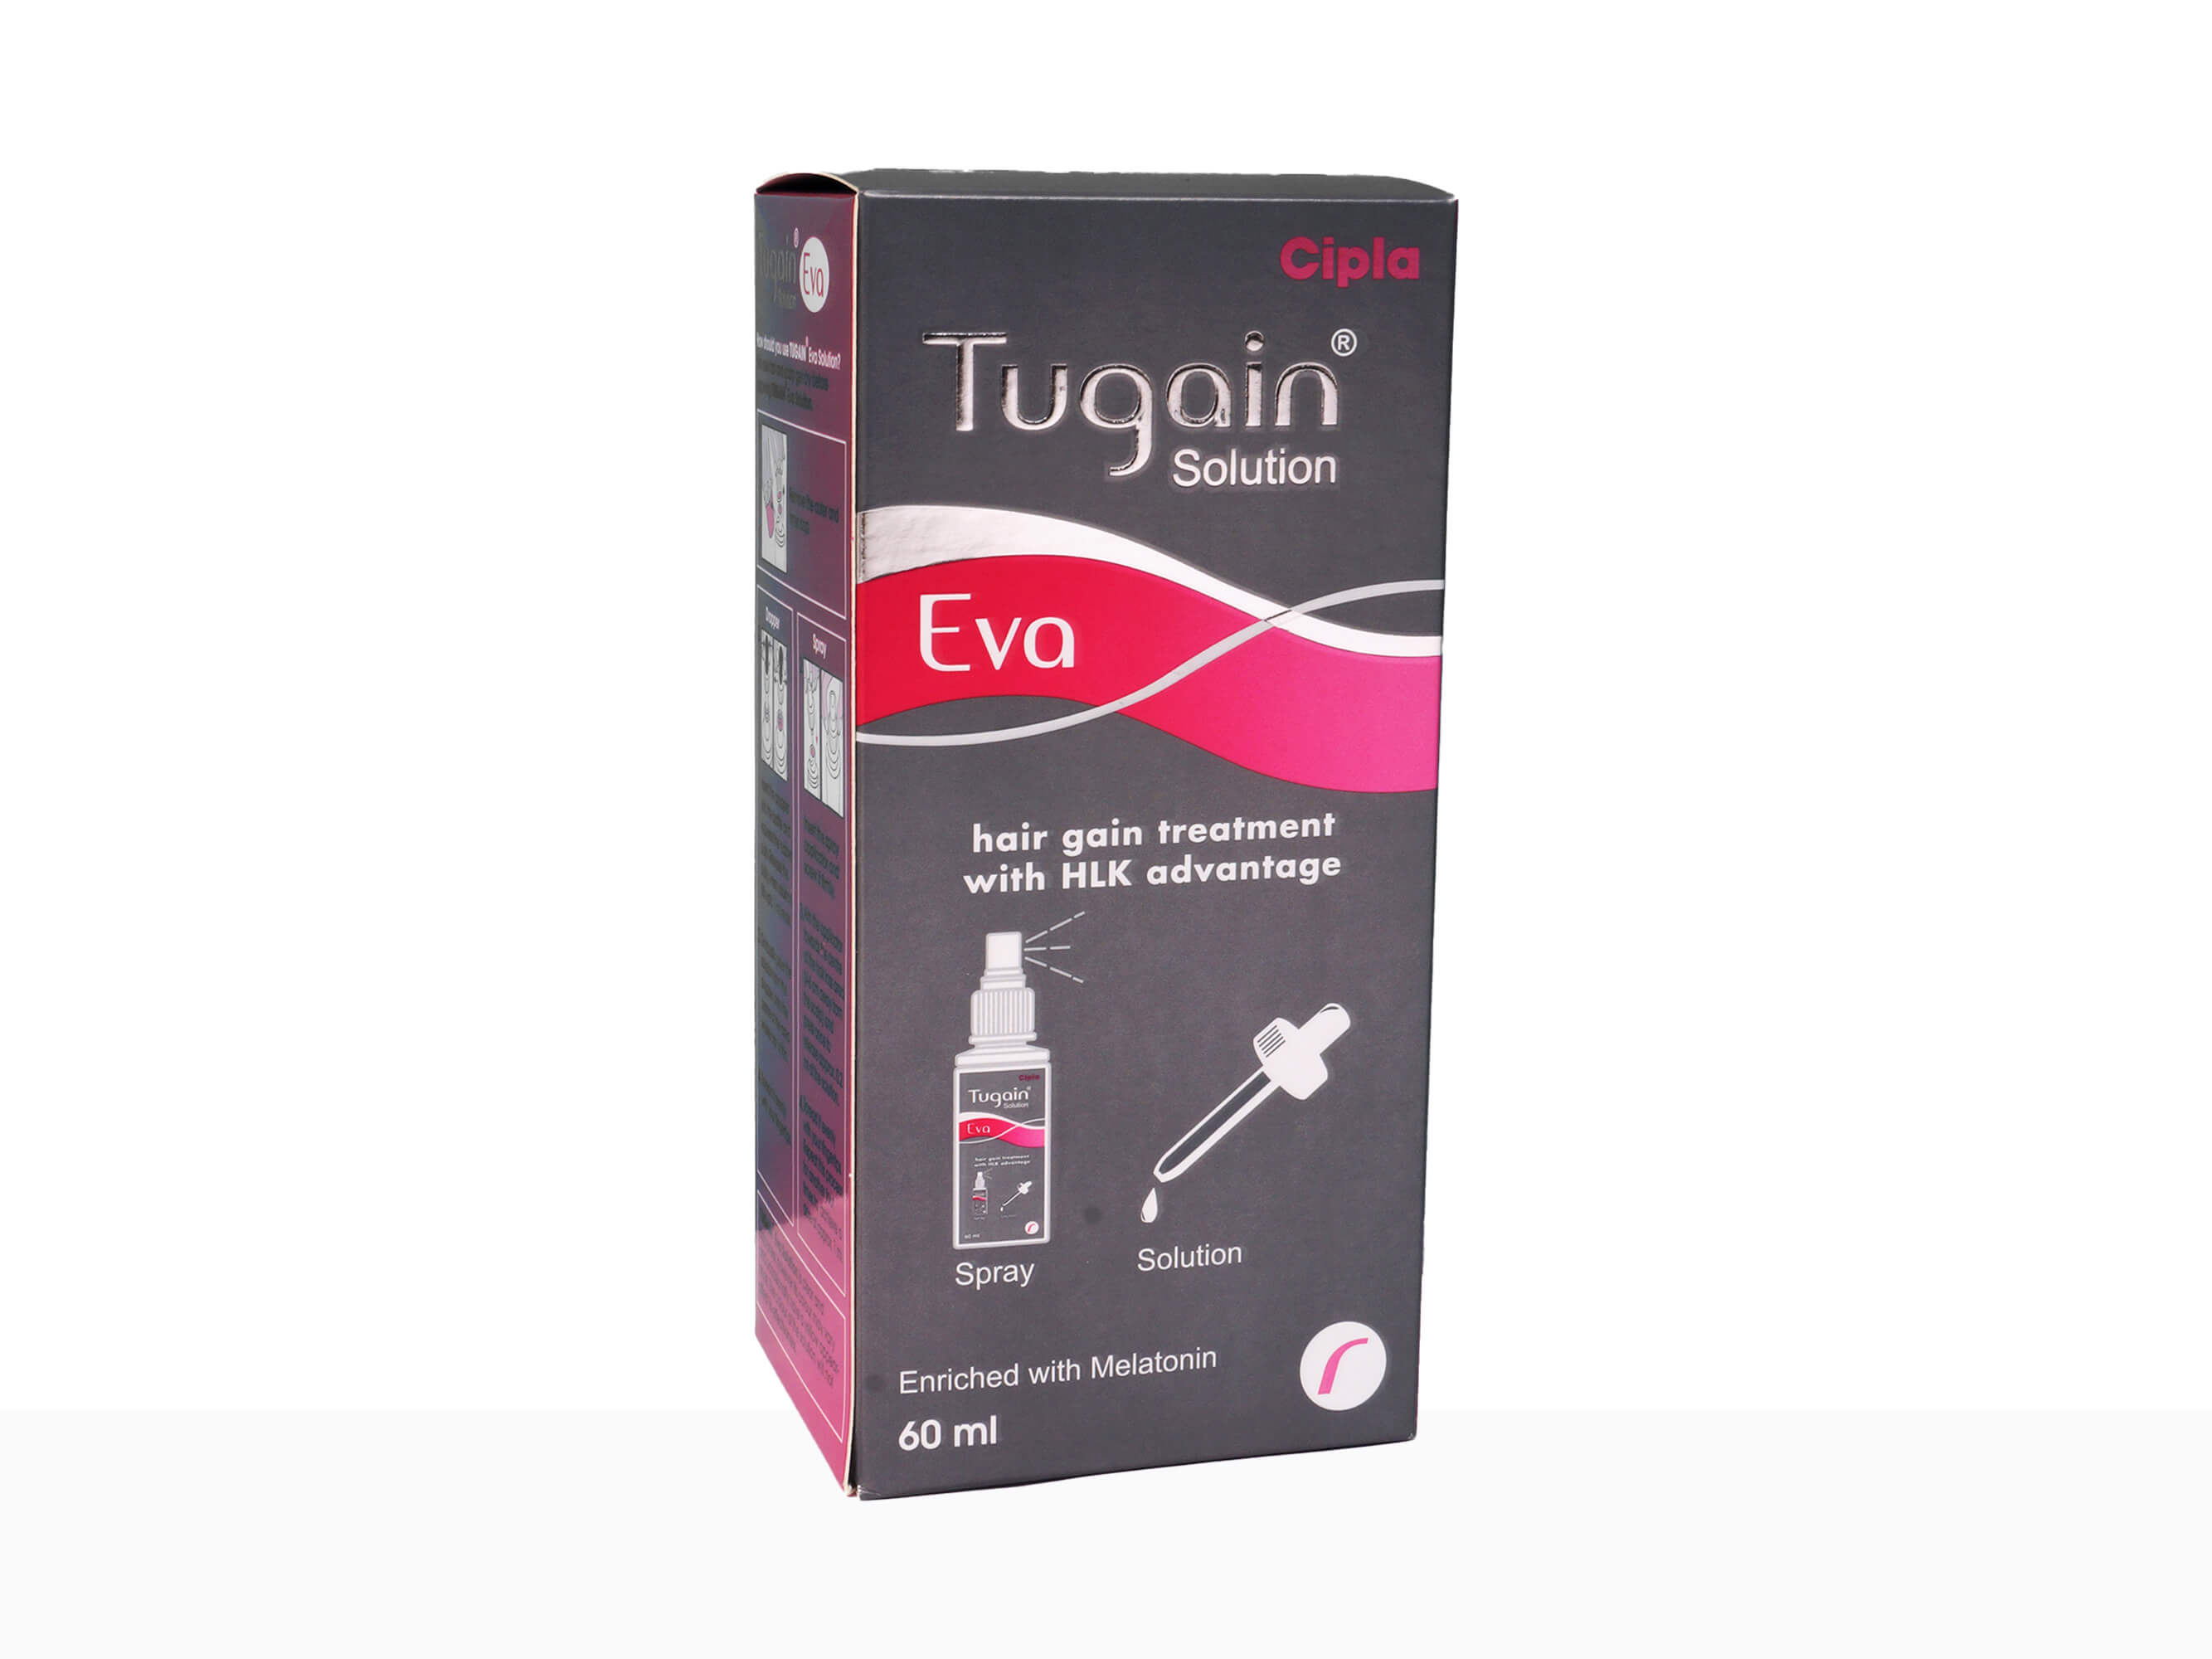 Tugain Eva Solution - Clinikally